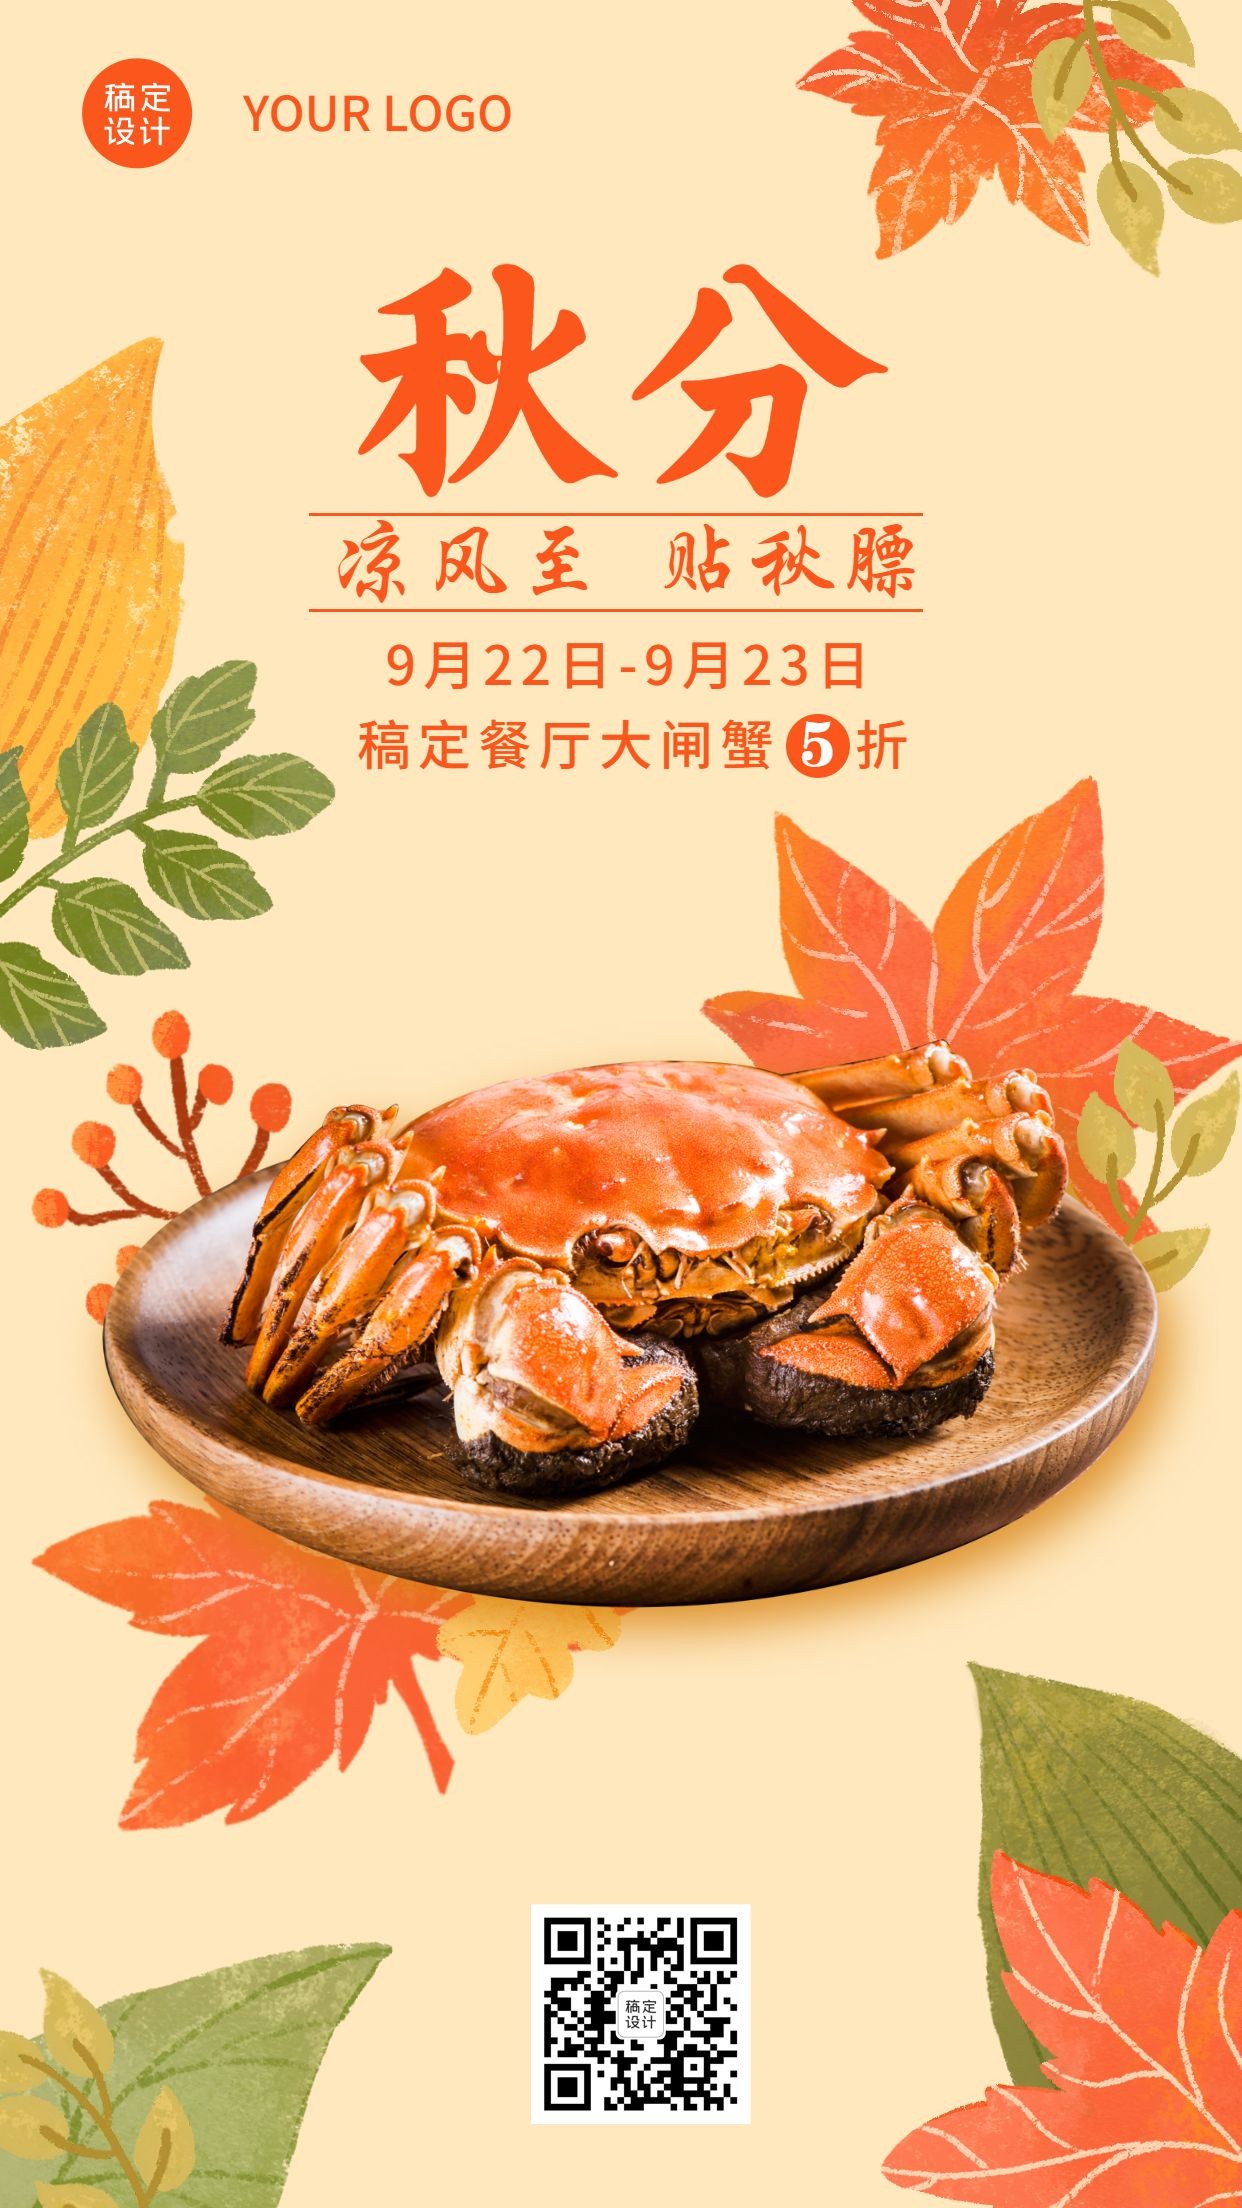 海鲜餐厅秋分打折活动手绘手机海报预览效果